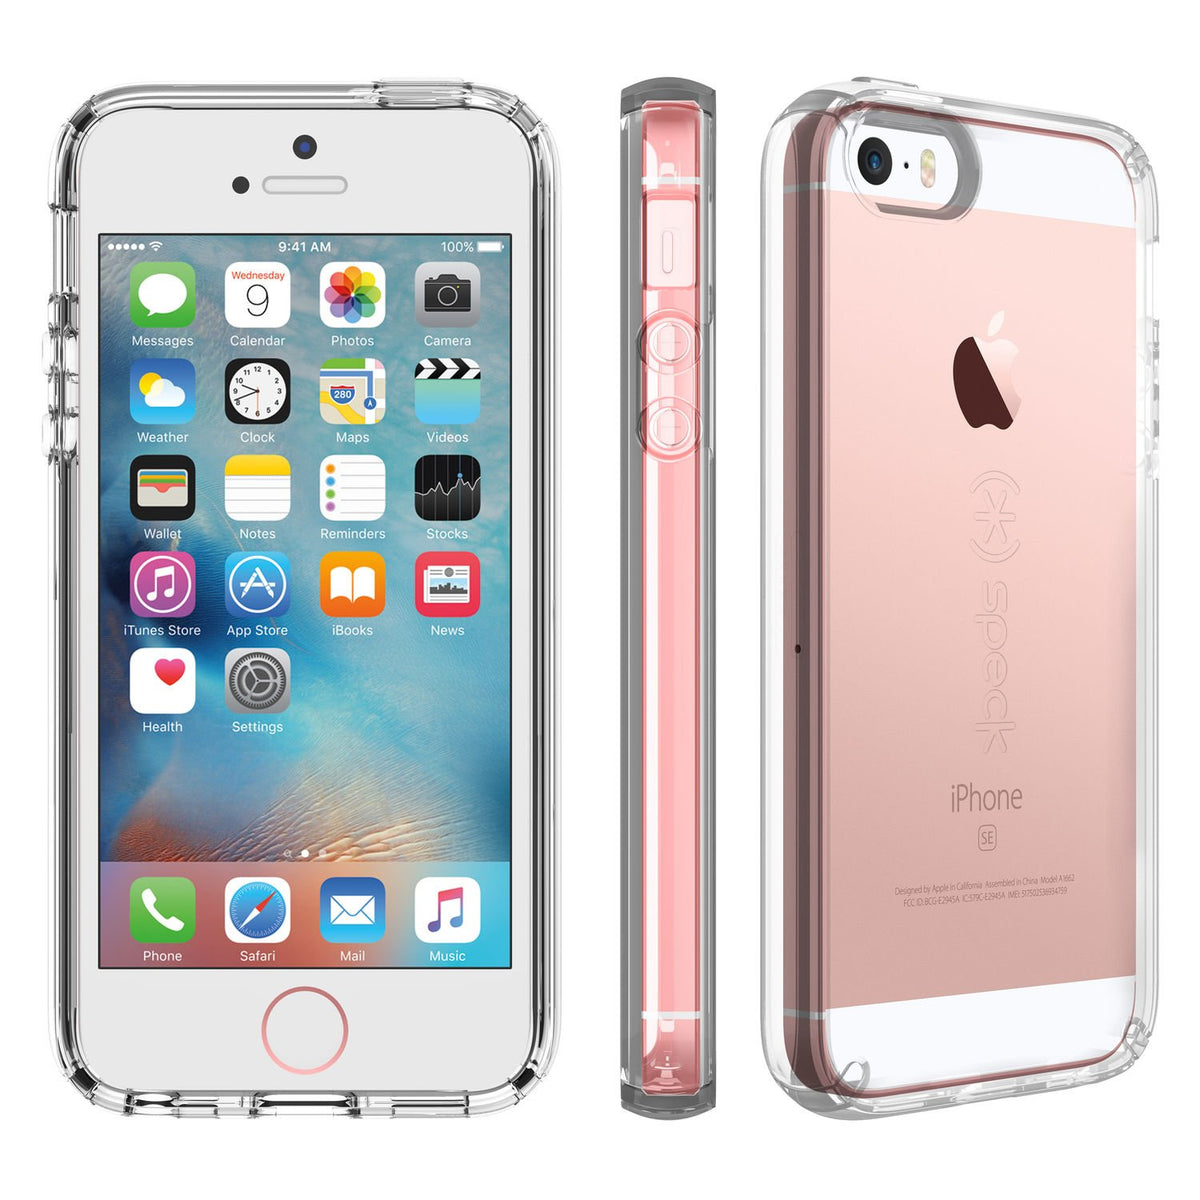 Funda Iluv Flightfit Color Rosa Para Iphone Se 2016 Iphone 5s Y 5